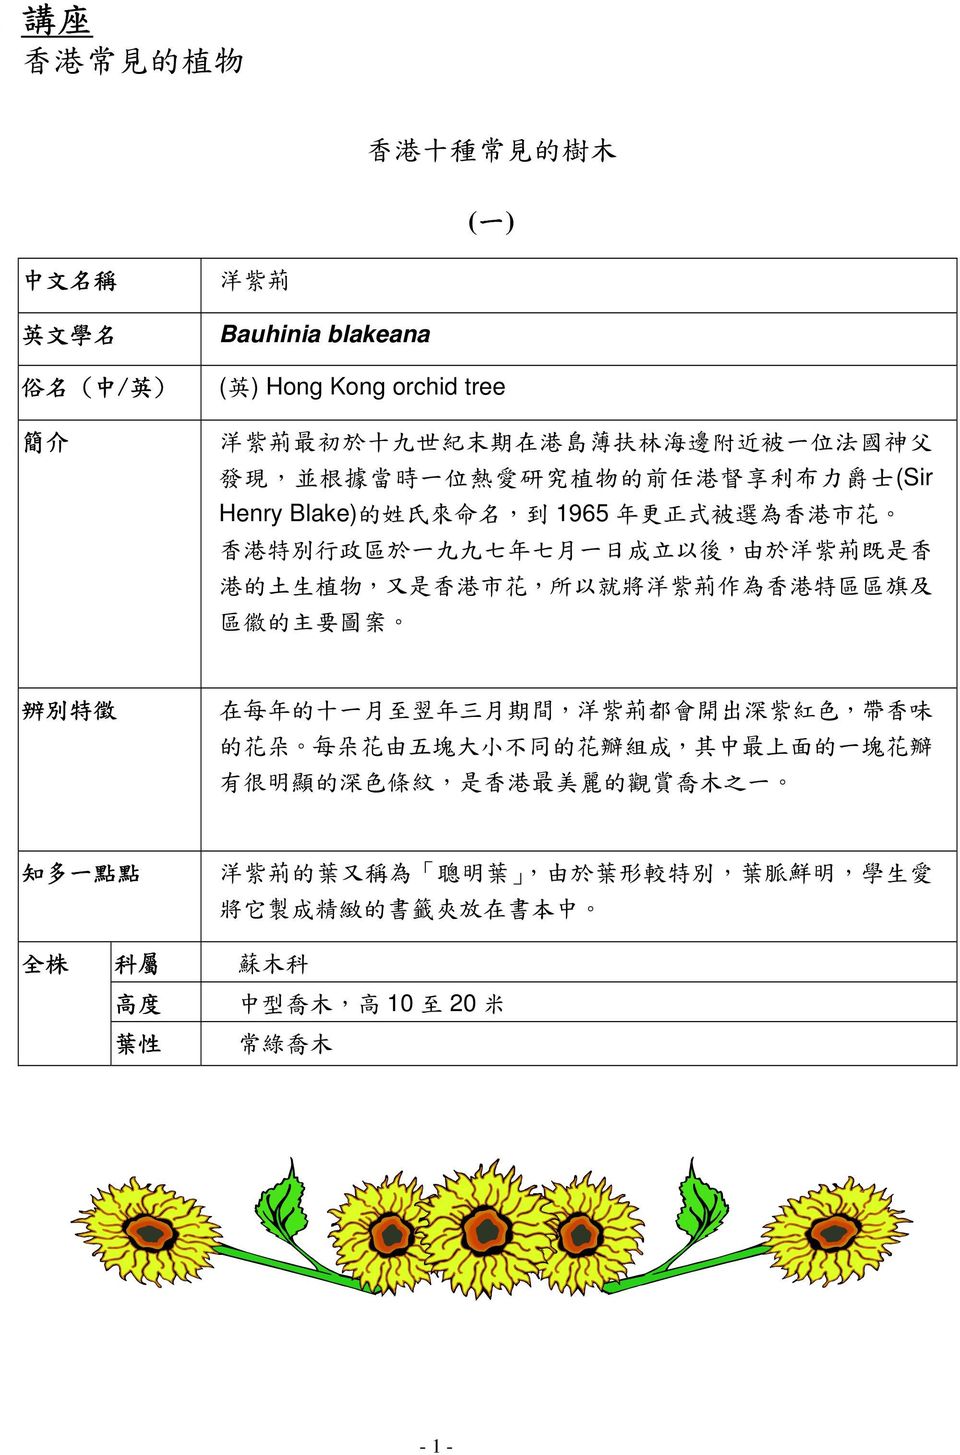 是 香 港 市 花, 所 以 就 將 洋 紫 荊 作 為 香 港 特 區 區 旗 及 區 徽 的 主 要 圖 案 辨 別 特 徵 在 每 年 的 十 一 月 至 翌 年 三 月 期 間, 洋 紫 荊 都 會 開 出 深 紫 紅 色, 帶 香 味 的 花 朵 每 朵 花 由 五 塊 大 小 不 同 的 花 瓣 組 成, 其 中 最 上 面 的 一 塊 花 瓣 有 很 明